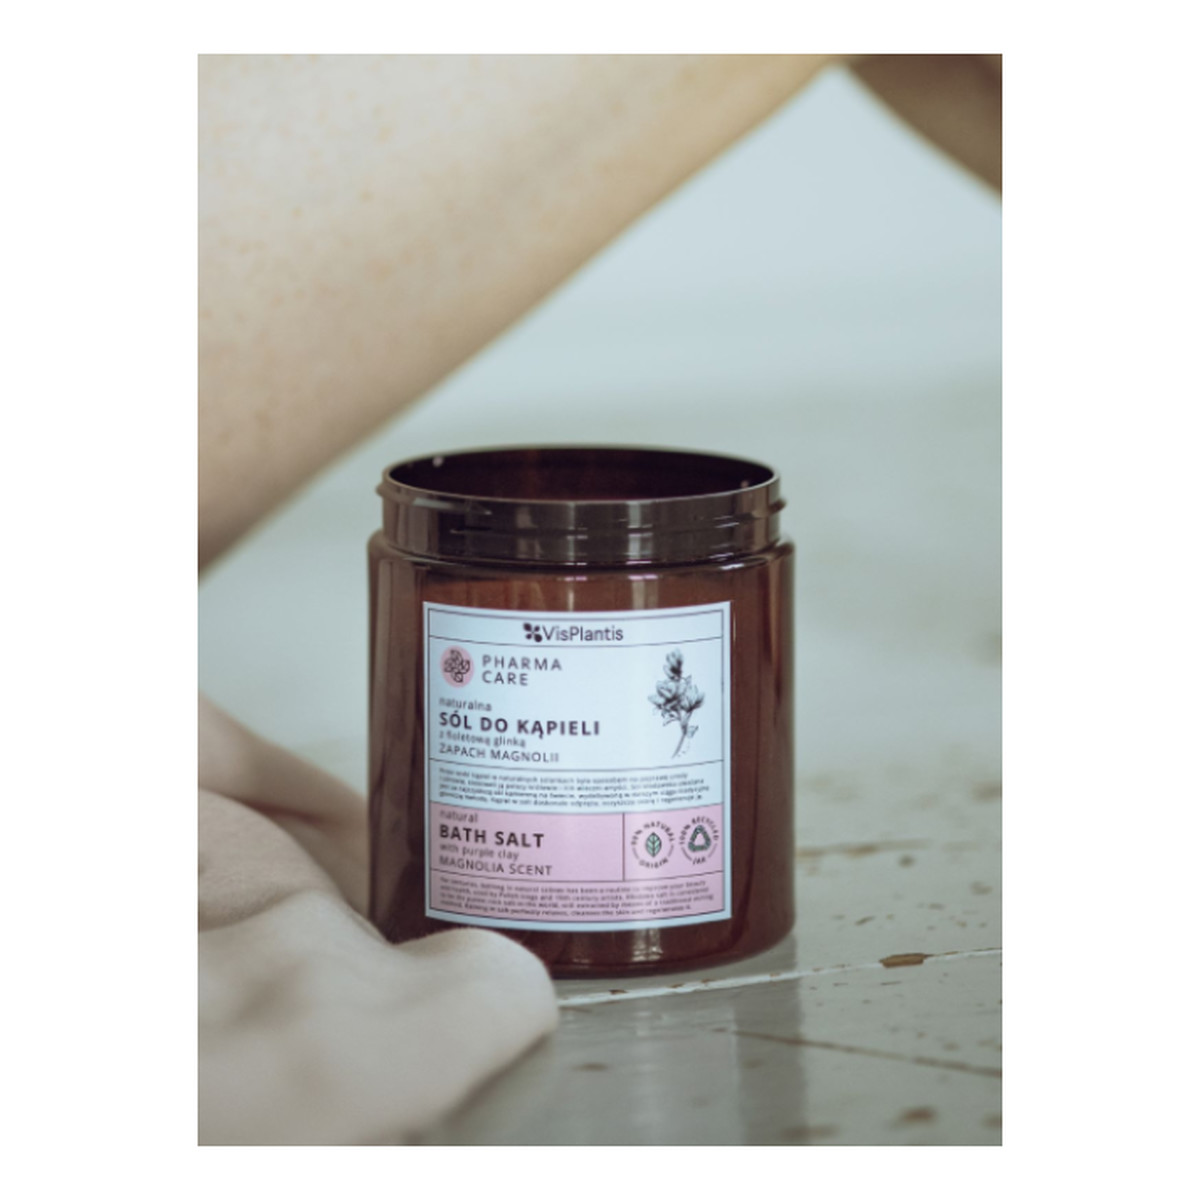 Vis Plantis Pharma Care Naturalna sól do kąpieli z fioletową glinką zapach Magnolii 800g